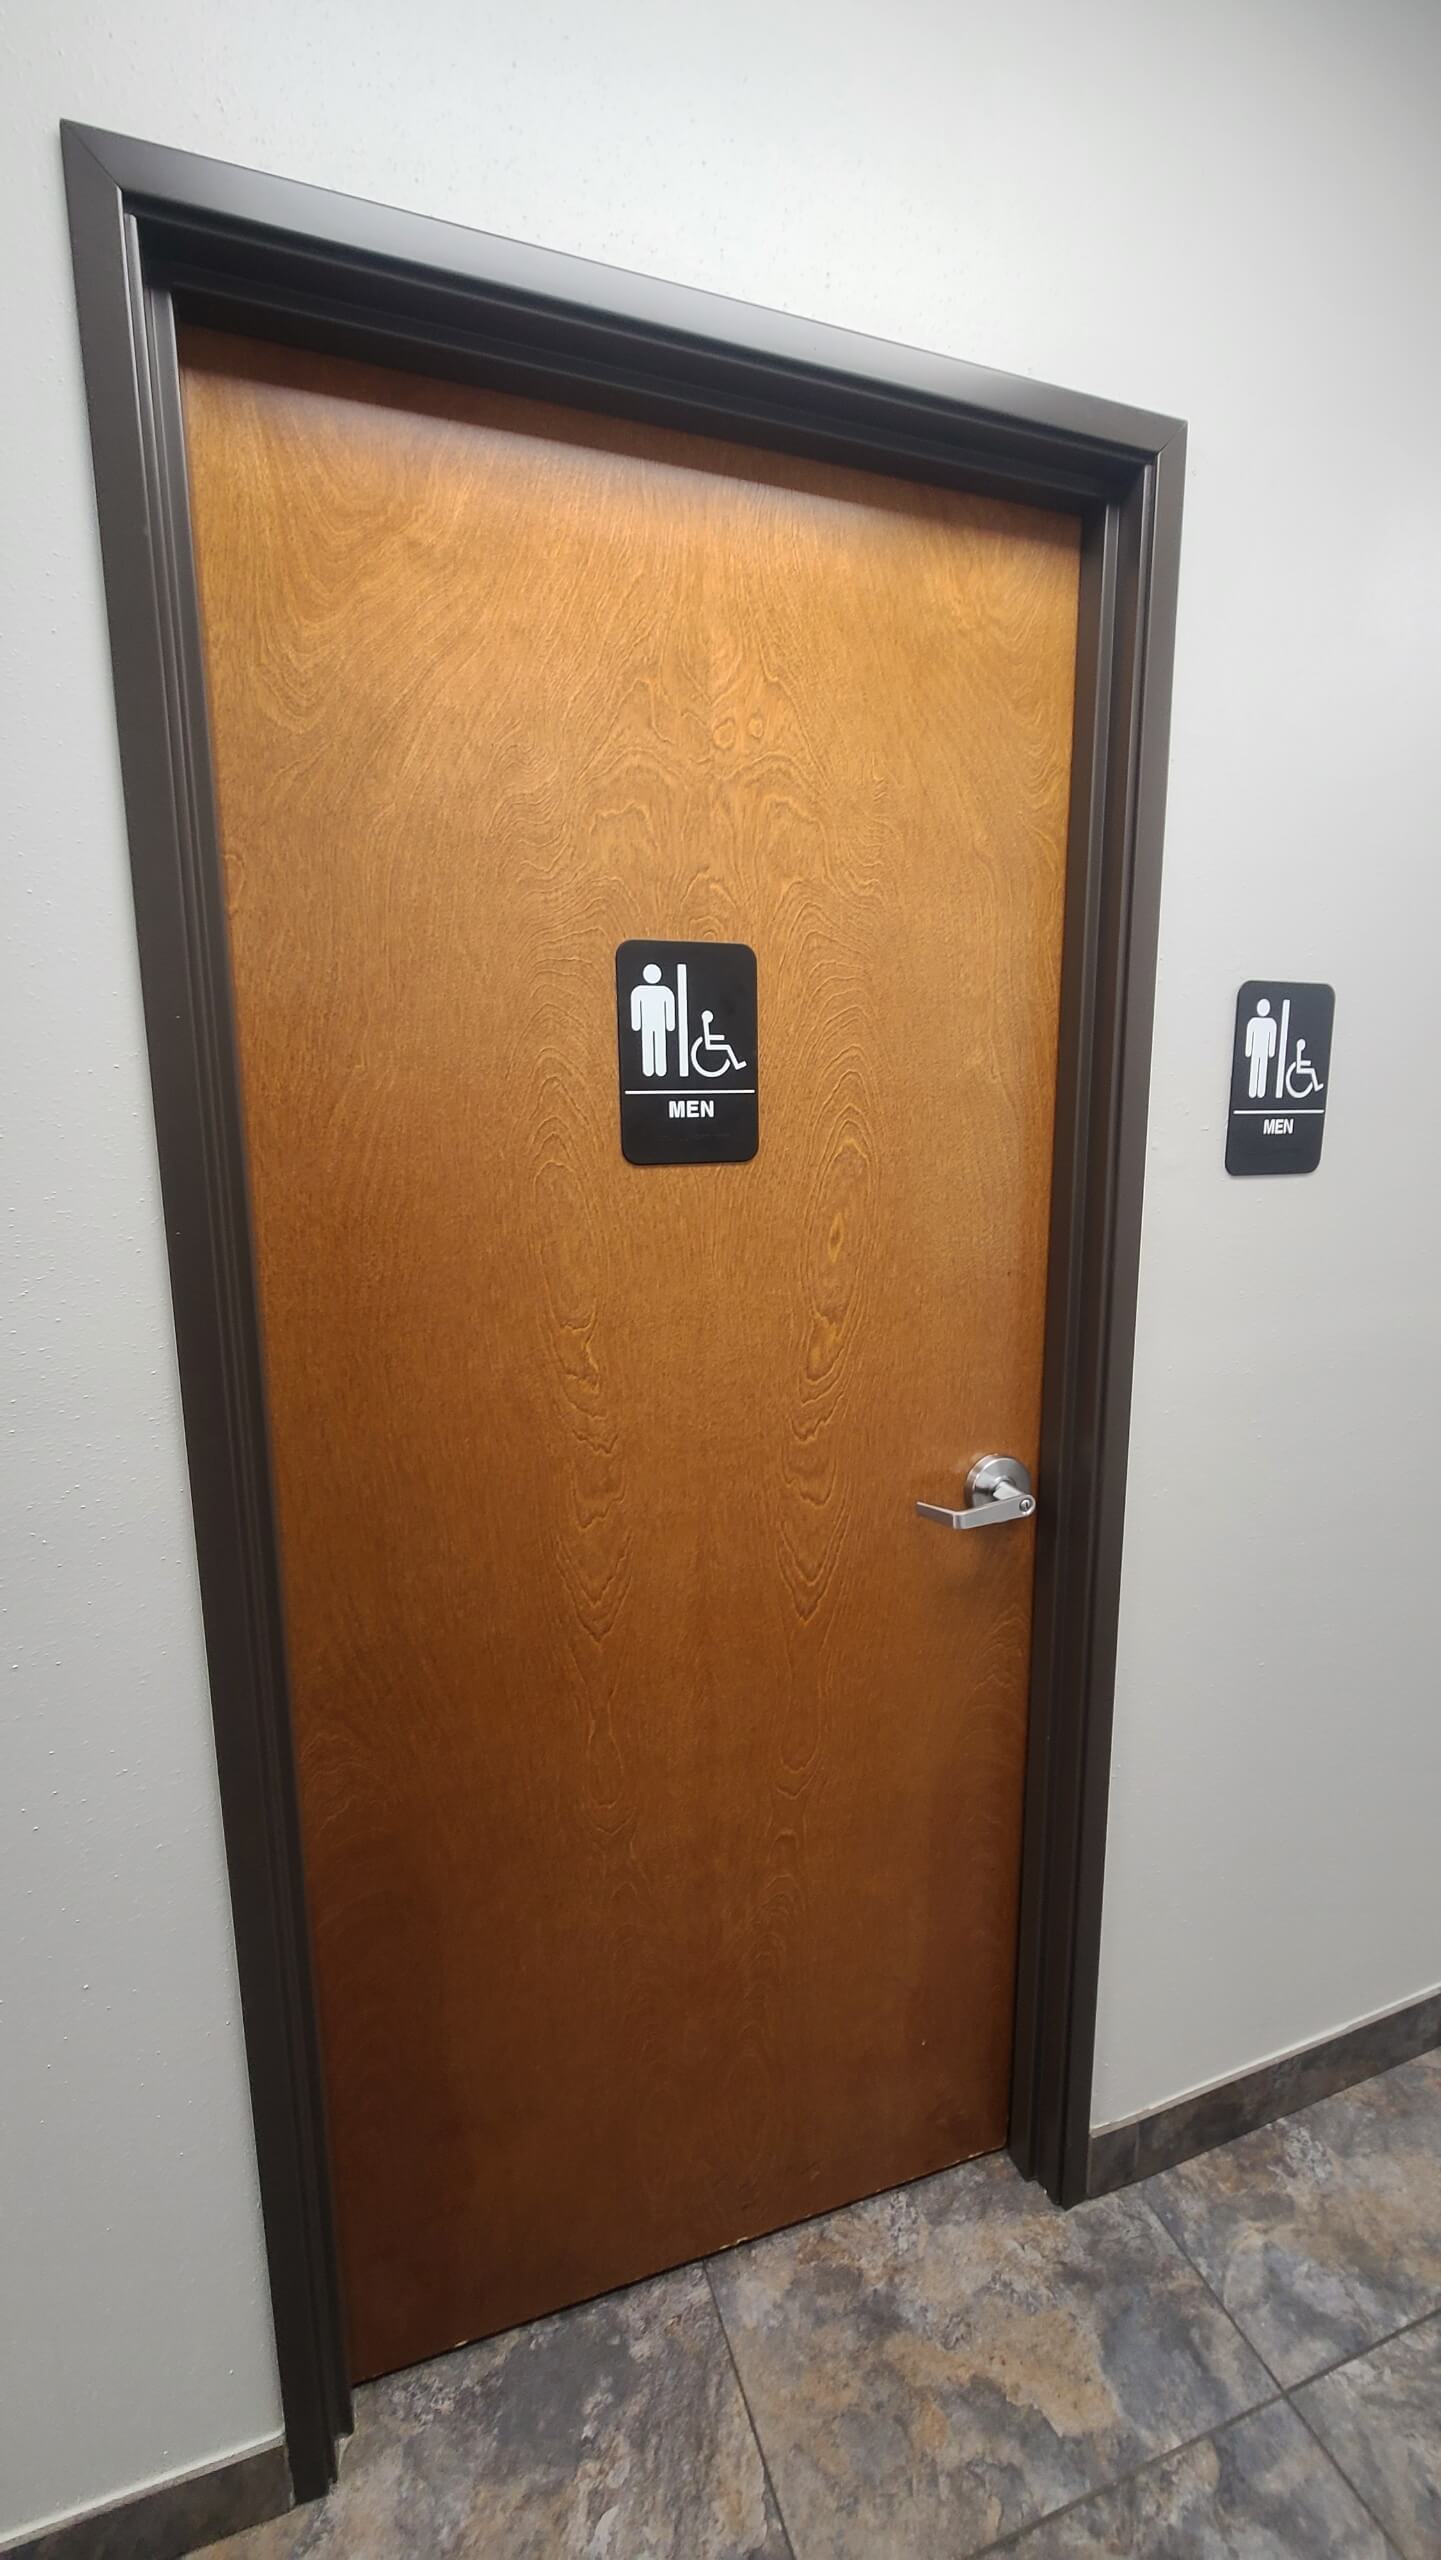 bathroom restroom door signs